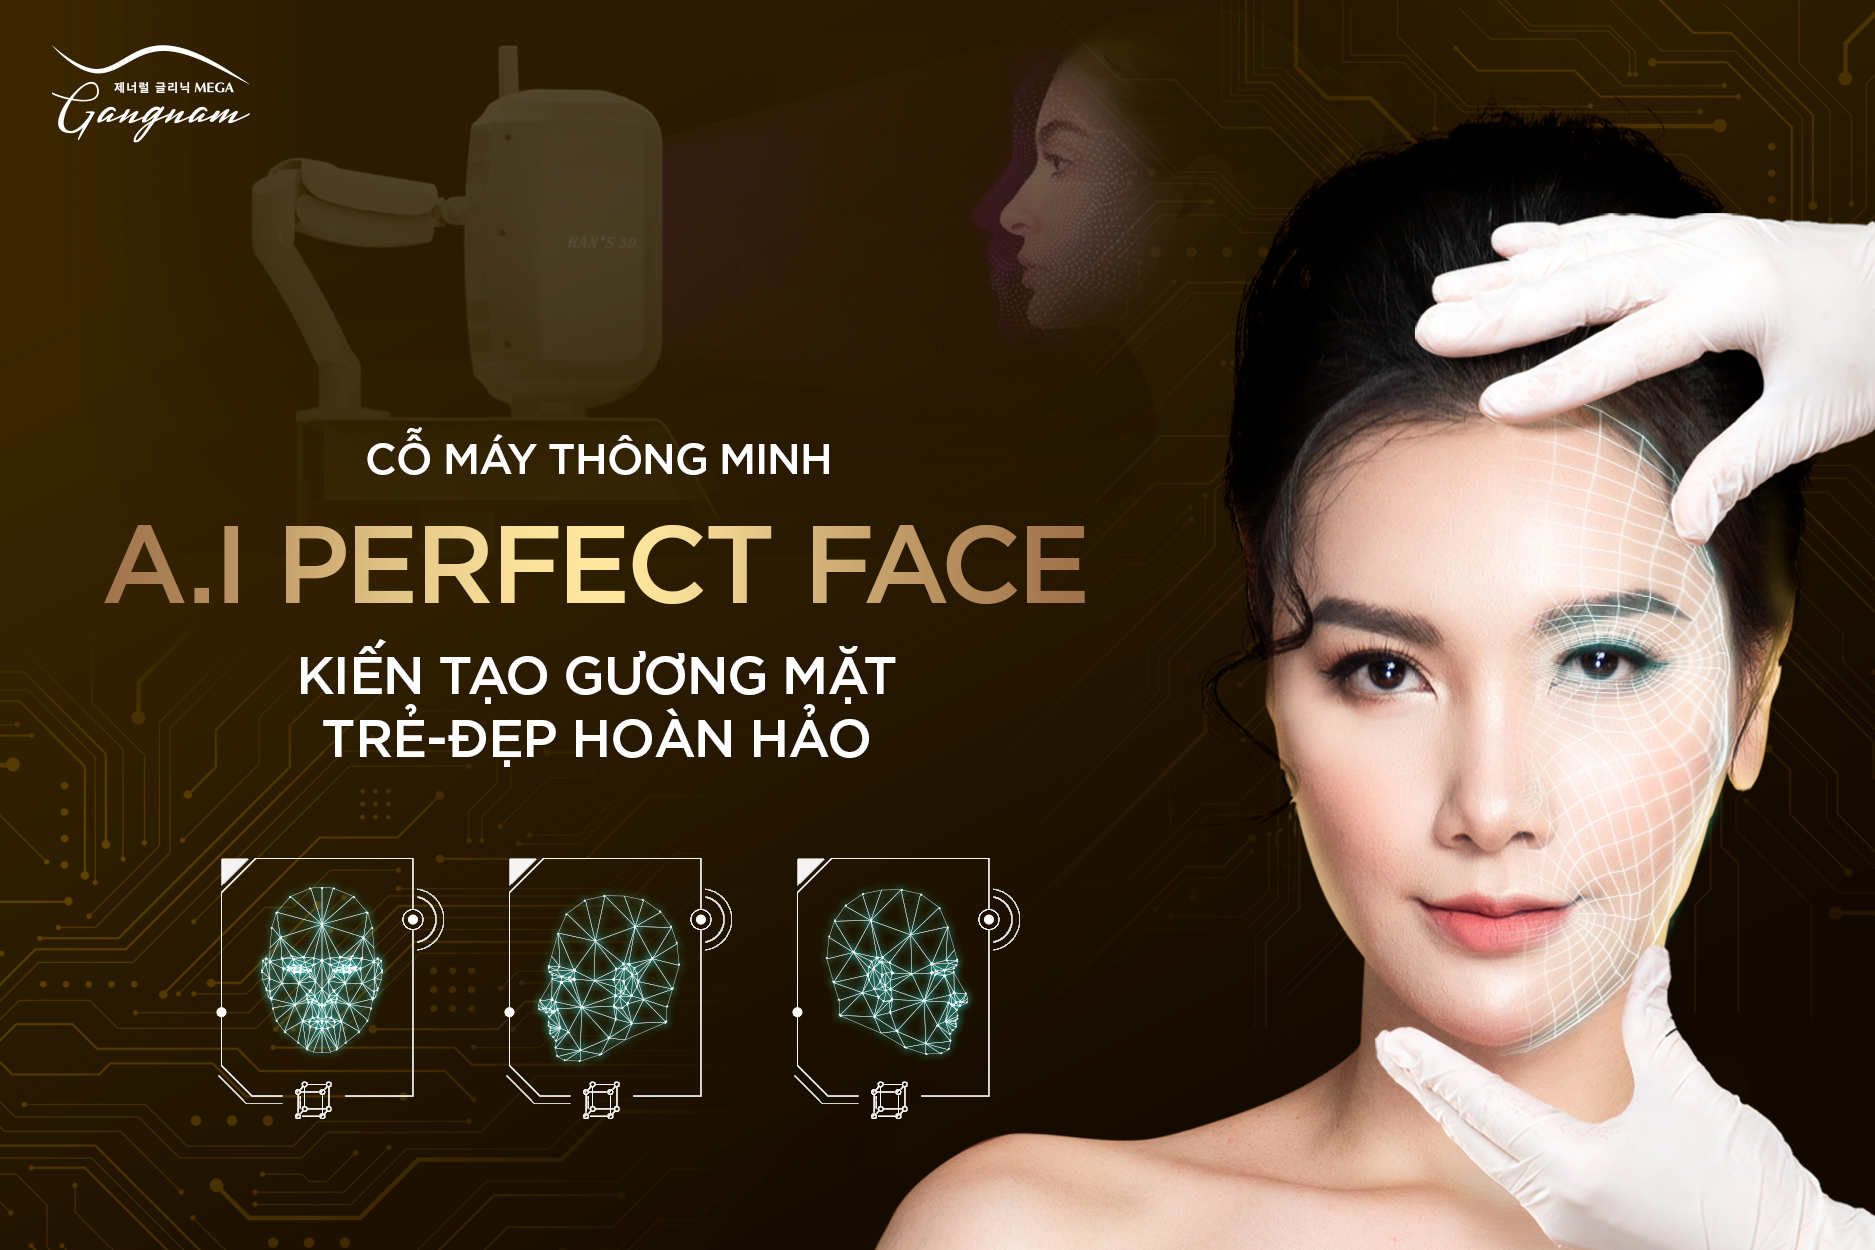 A.I Perfect Face là công nghệ mô phỏng kiến tạo gương mặt độc bản